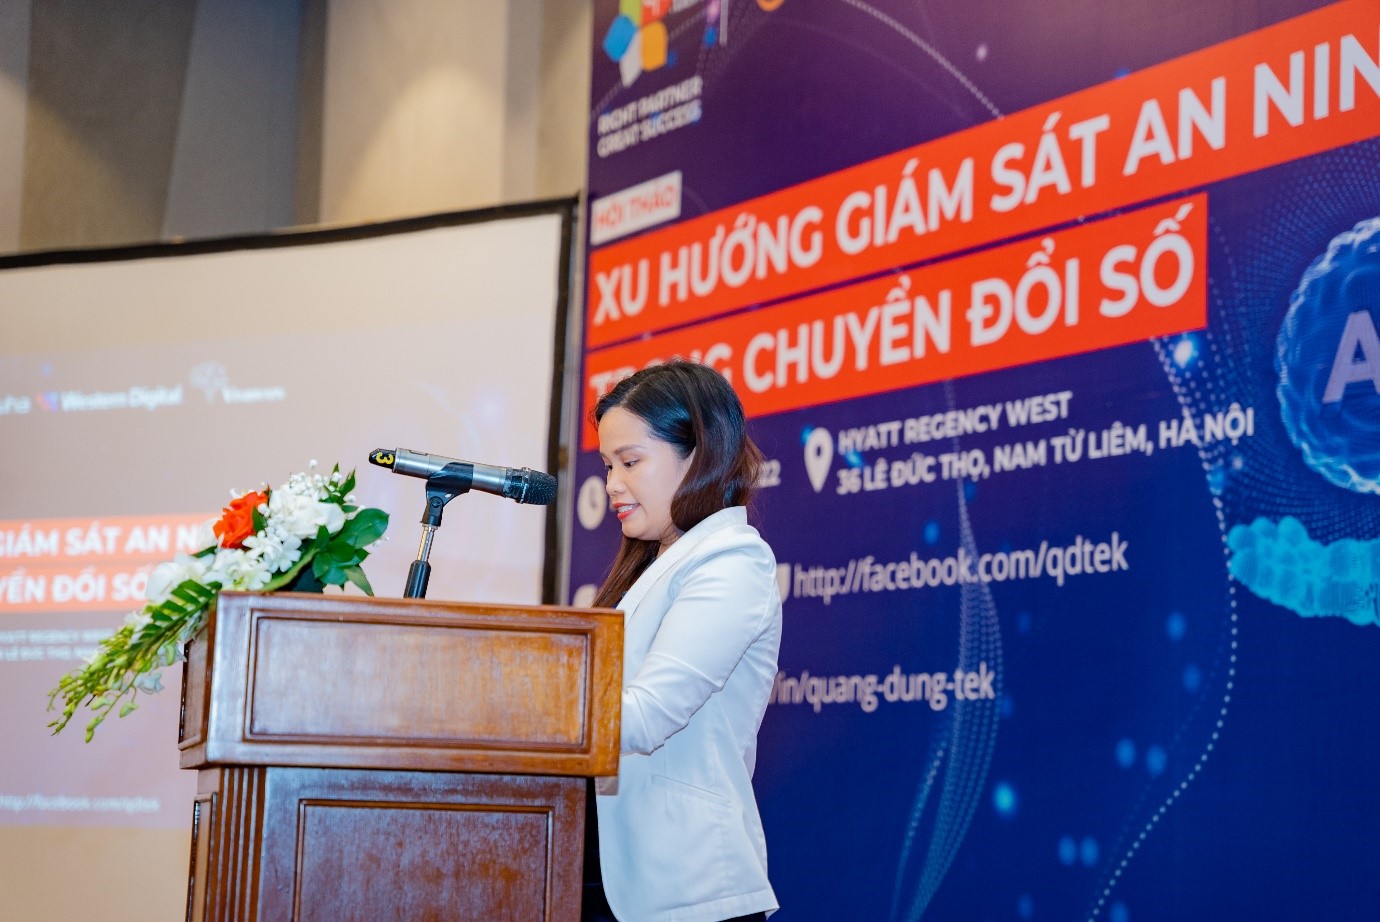 Hội thảo “XU HƯỚNG GIÁM SÁT AN NINH TRONG CHUYỂN ĐỔI SỐ” lần đầu tiên được tổ chức tại Hà Nội.